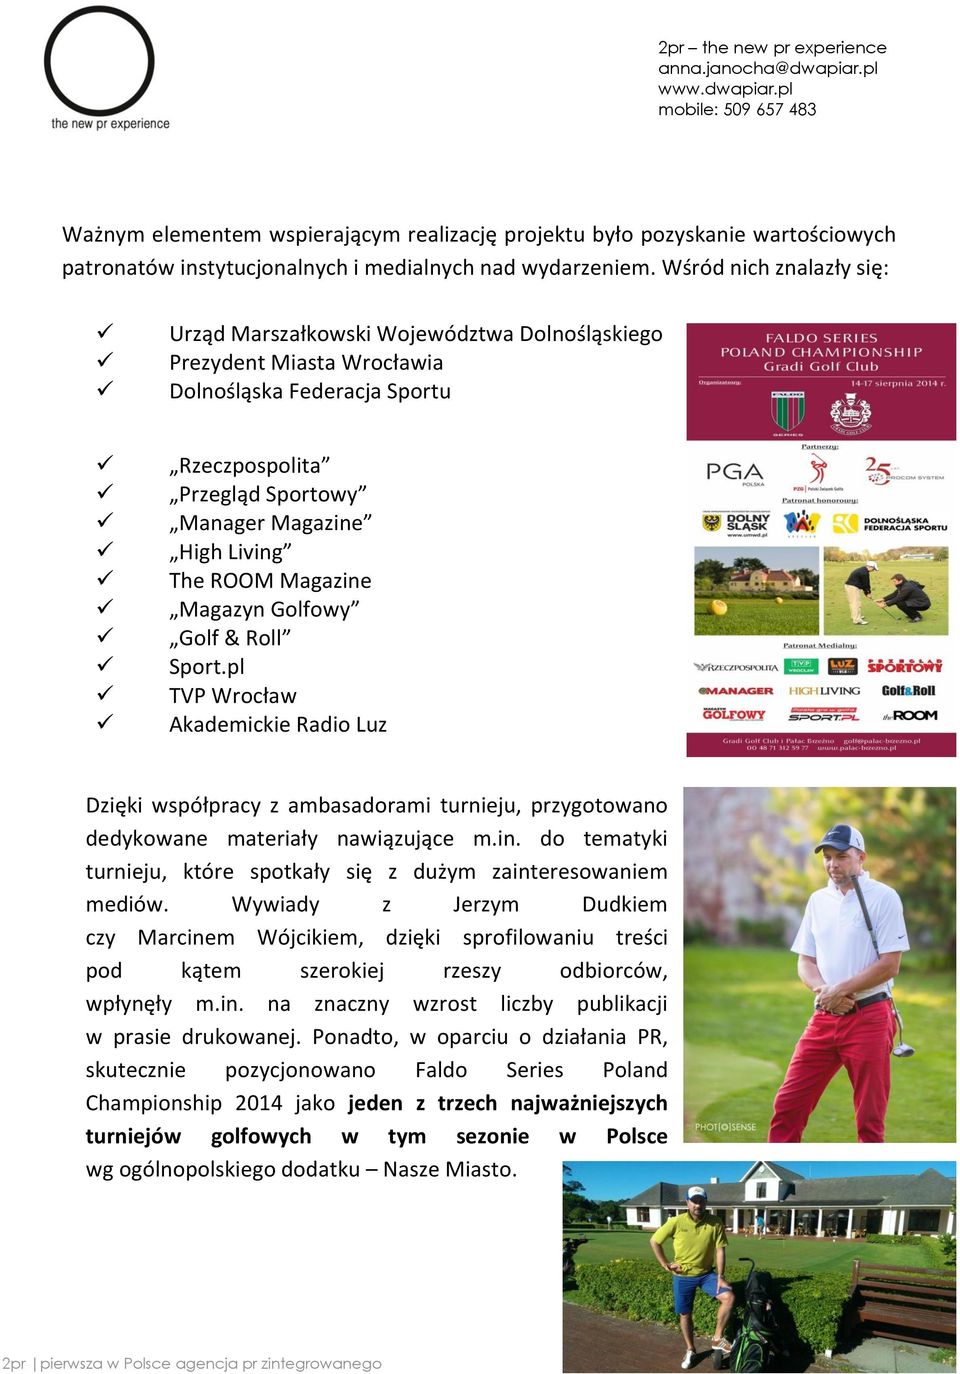 Magazine Magazyn Golfowy Golf & Roll Sport.pl TVP Wrocław Akademickie Radio Luz Dzięki współpracy z ambasadorami turnieju, przygotowano dedykowane materiały nawiązujące m.in. do tematyki turnieju, które spotkały się z dużym zainteresowaniem mediów.